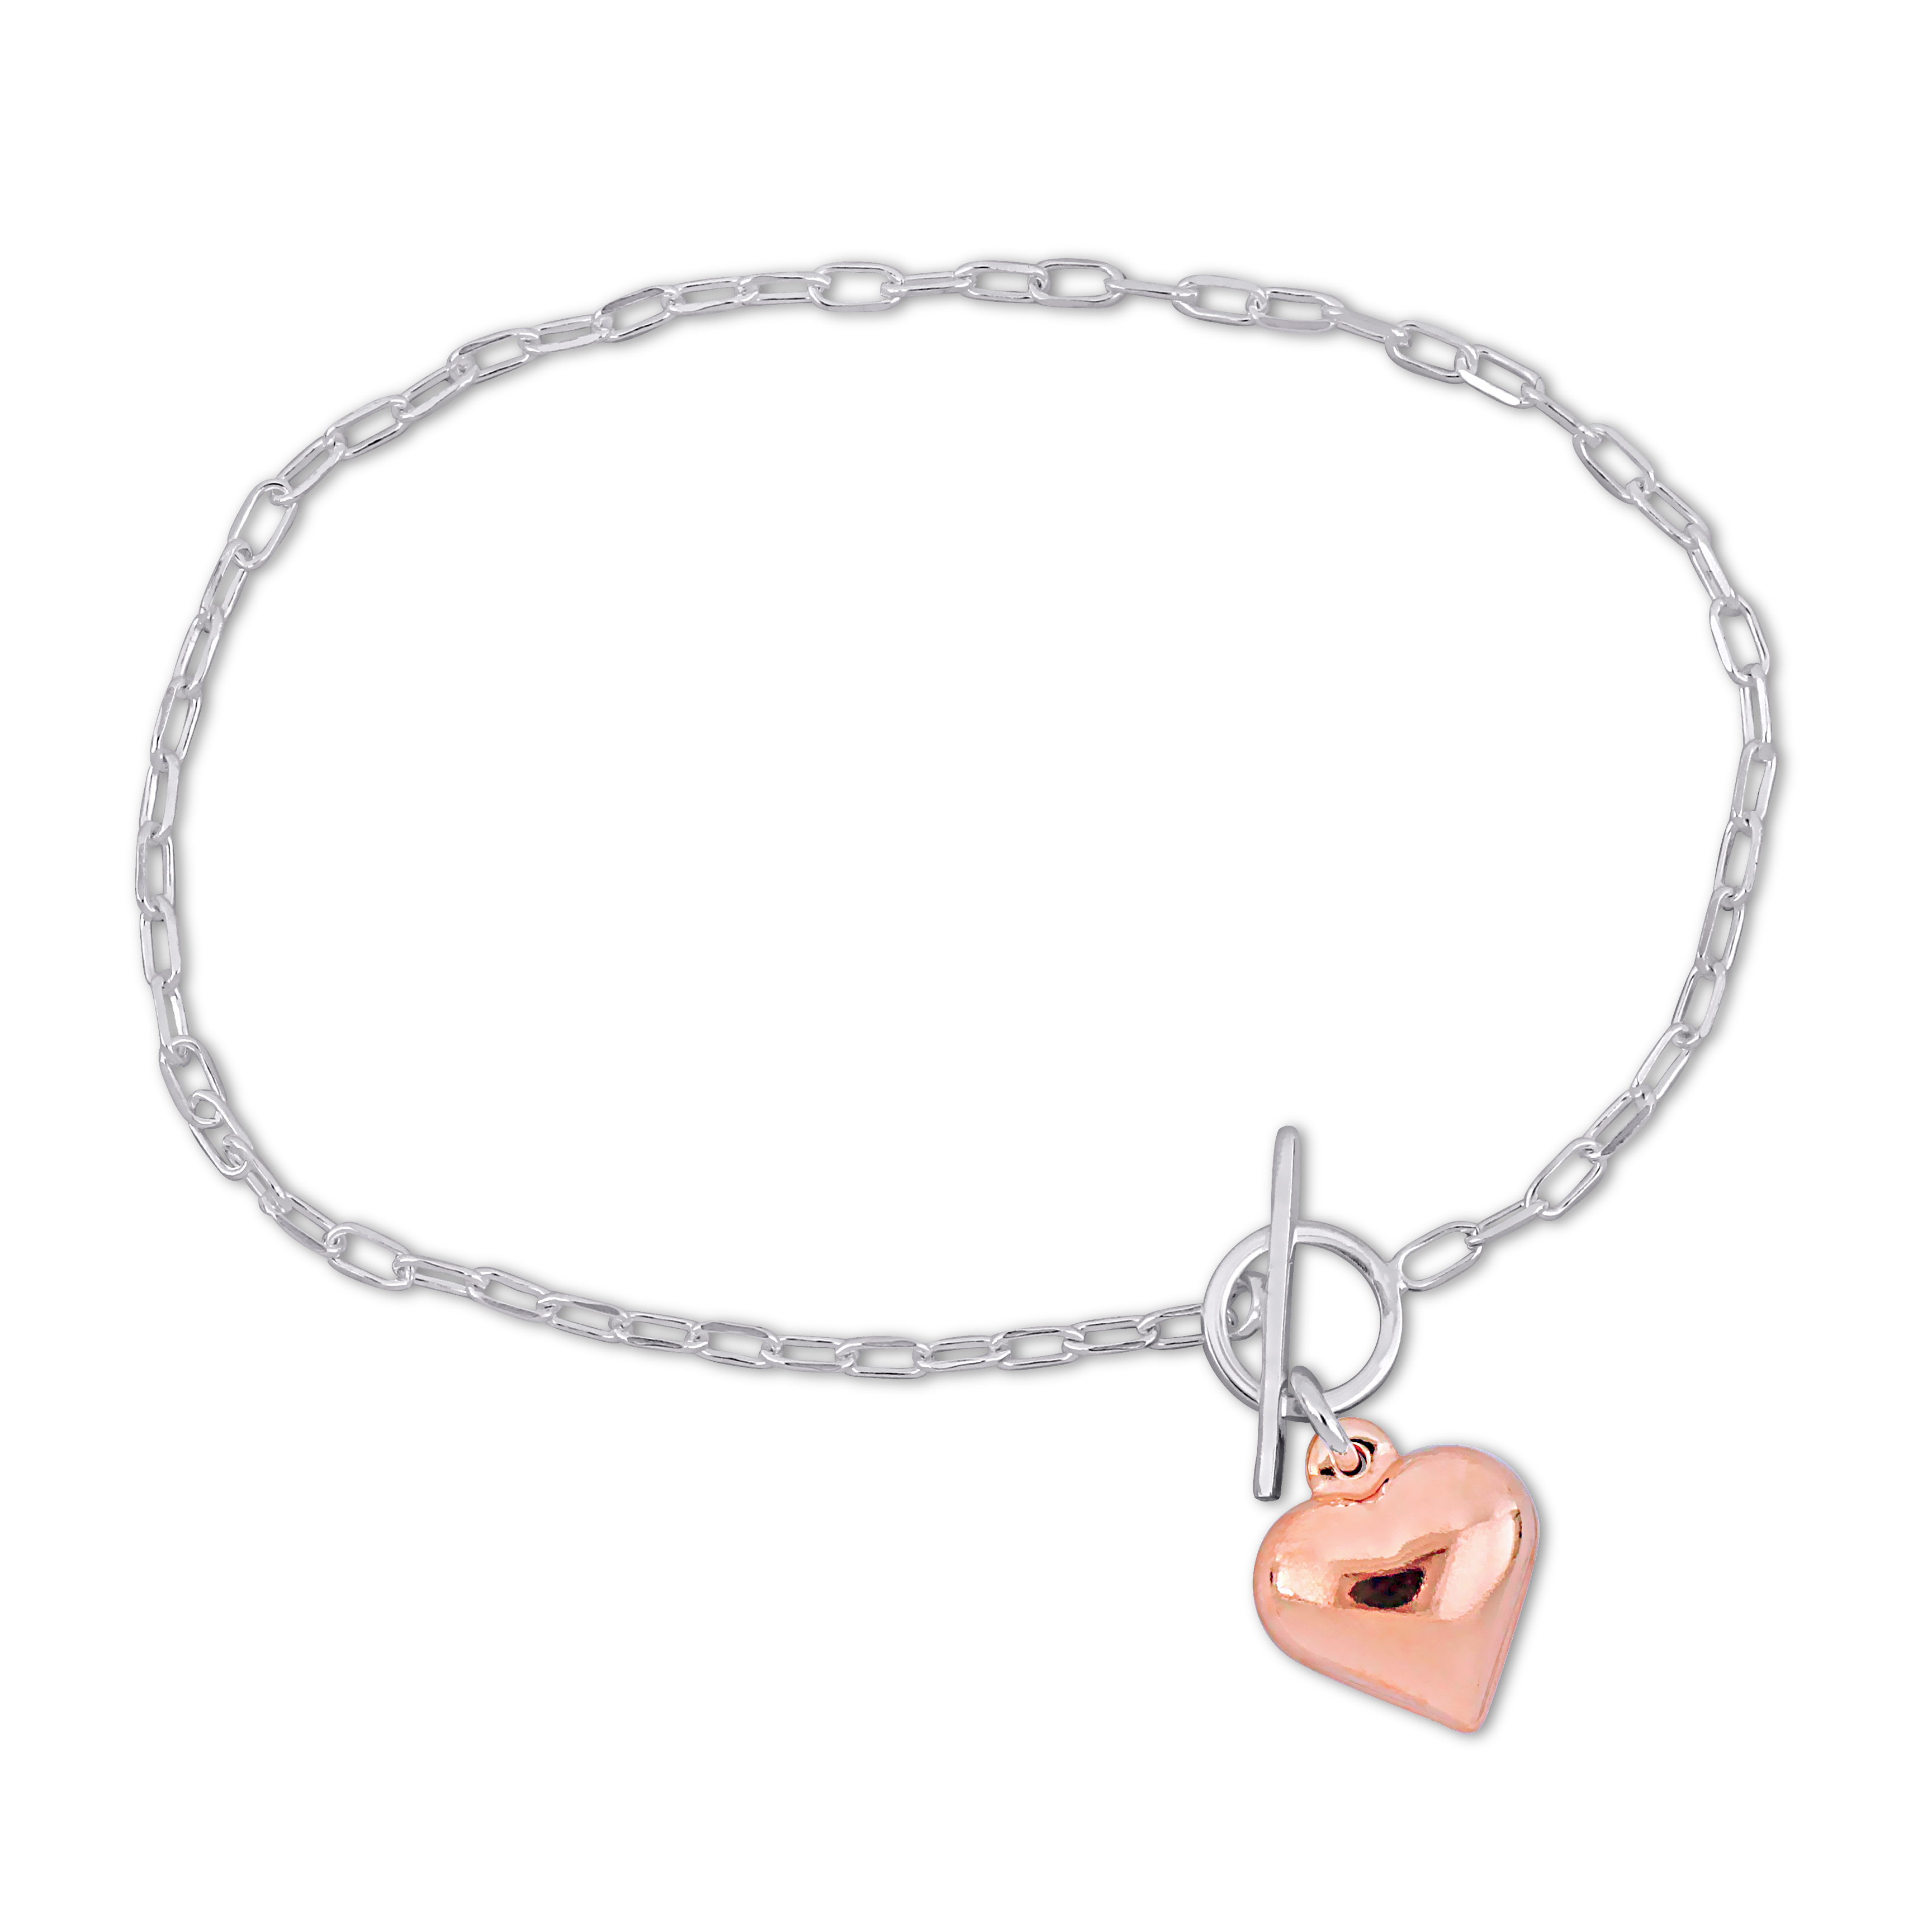 Rose Heart Charm Bracelet in Two-Tone Sterling Silver - 7.5 in.